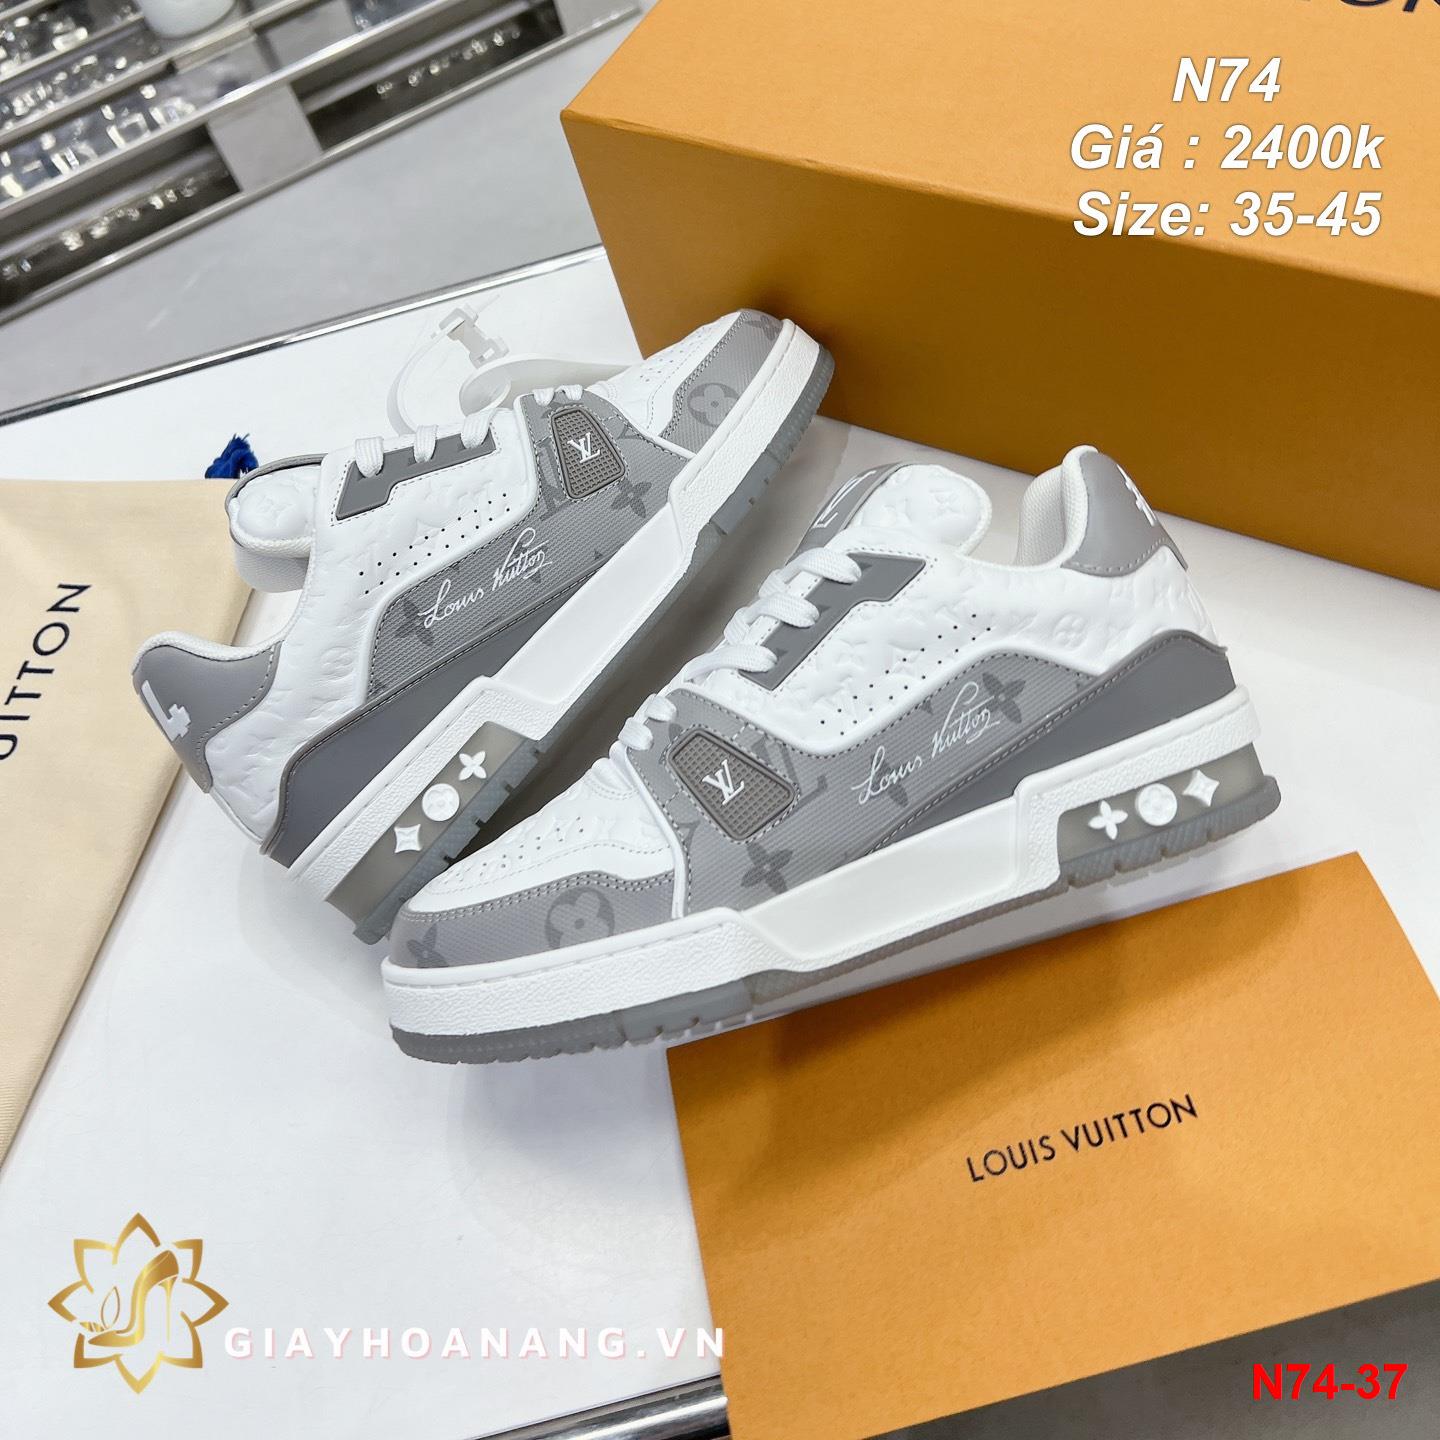 N74-37 Louis Vuitton giày thể thao siêu cấp